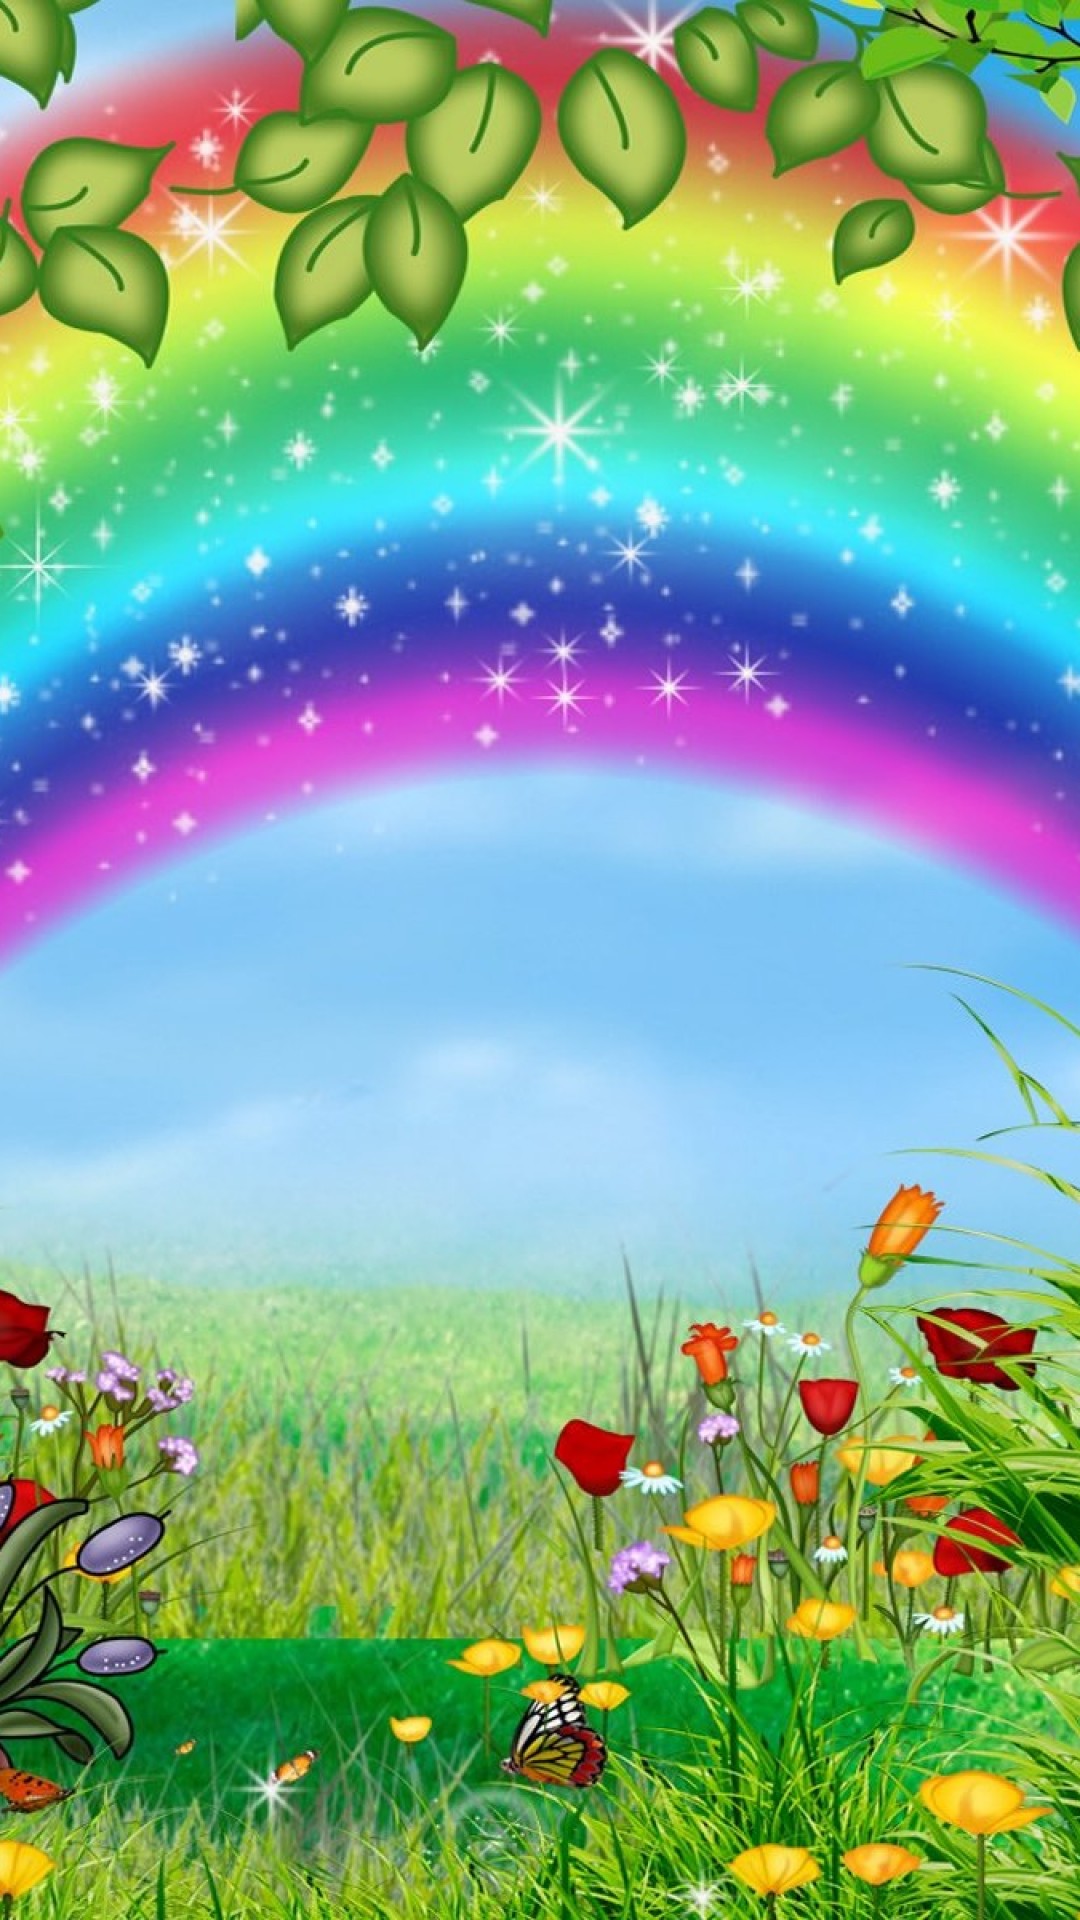 美しい虹の絵 かわいいiphone壁紙 Iphone13 スマホ壁紙 待受画像ギャラリー